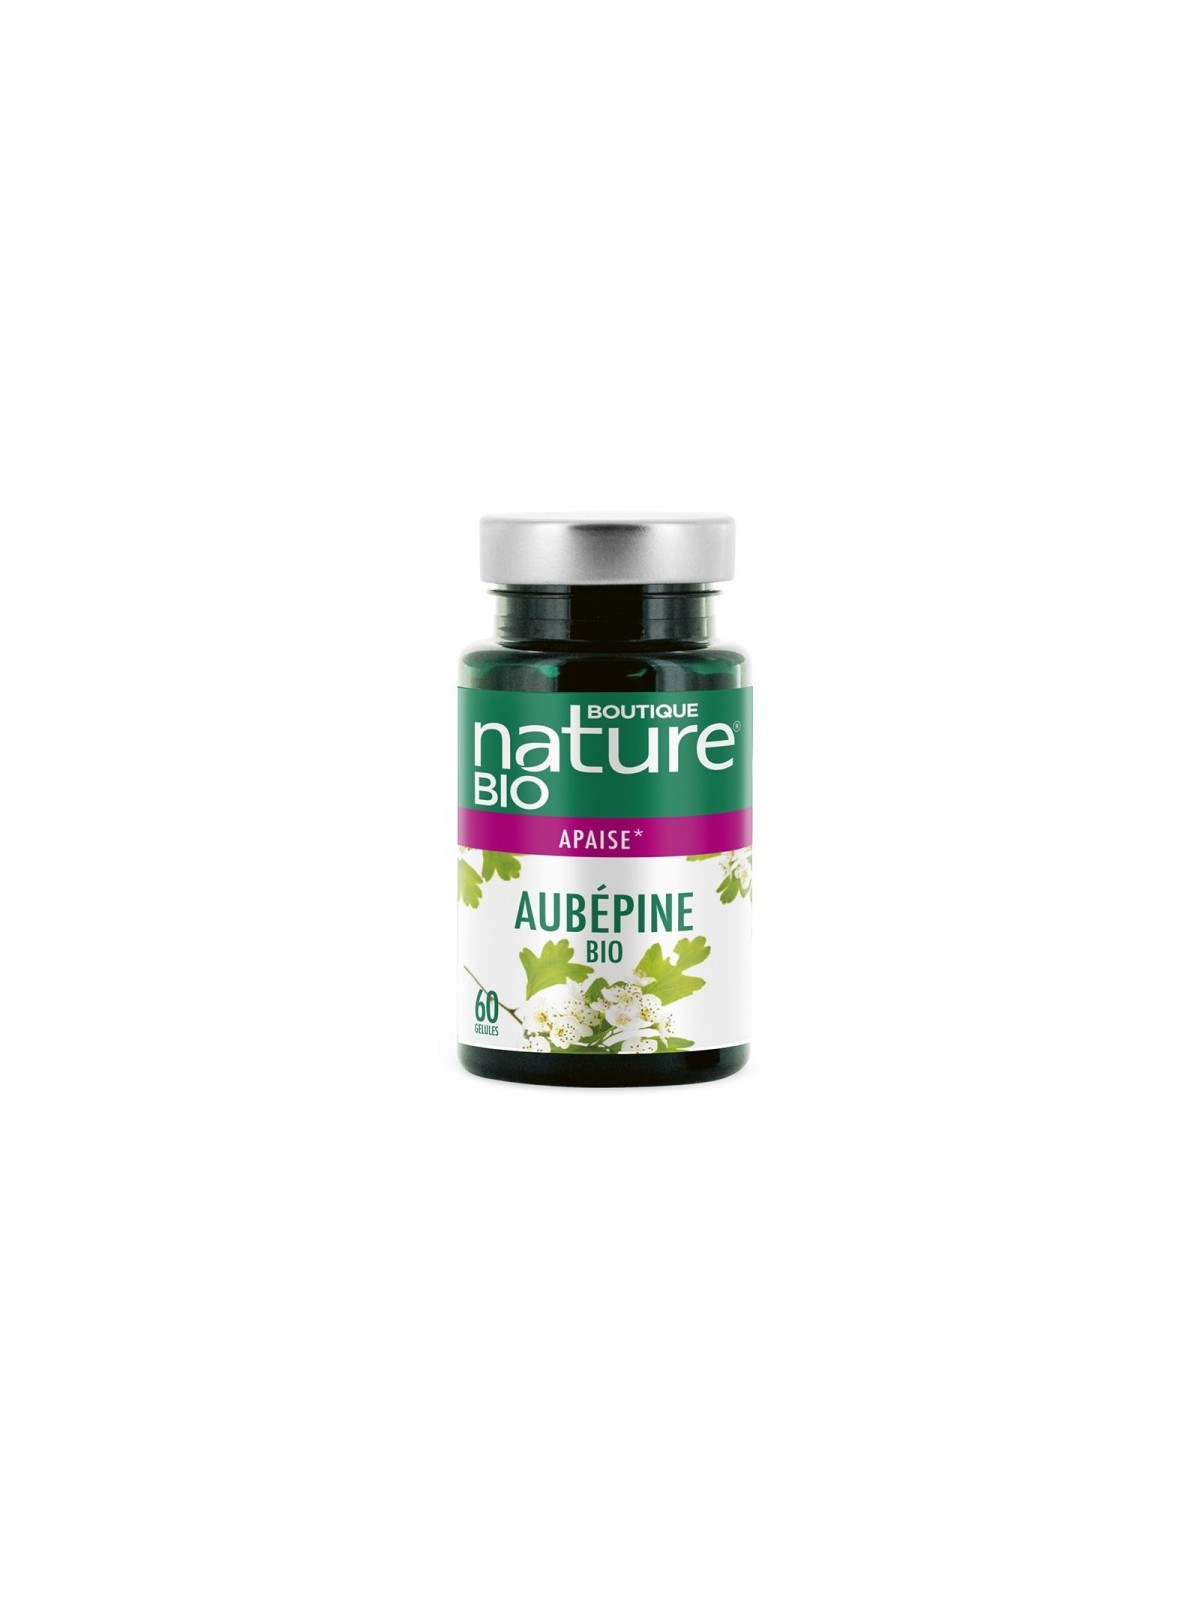 Aubépine Bio (60 gélules) - Boutique Nature